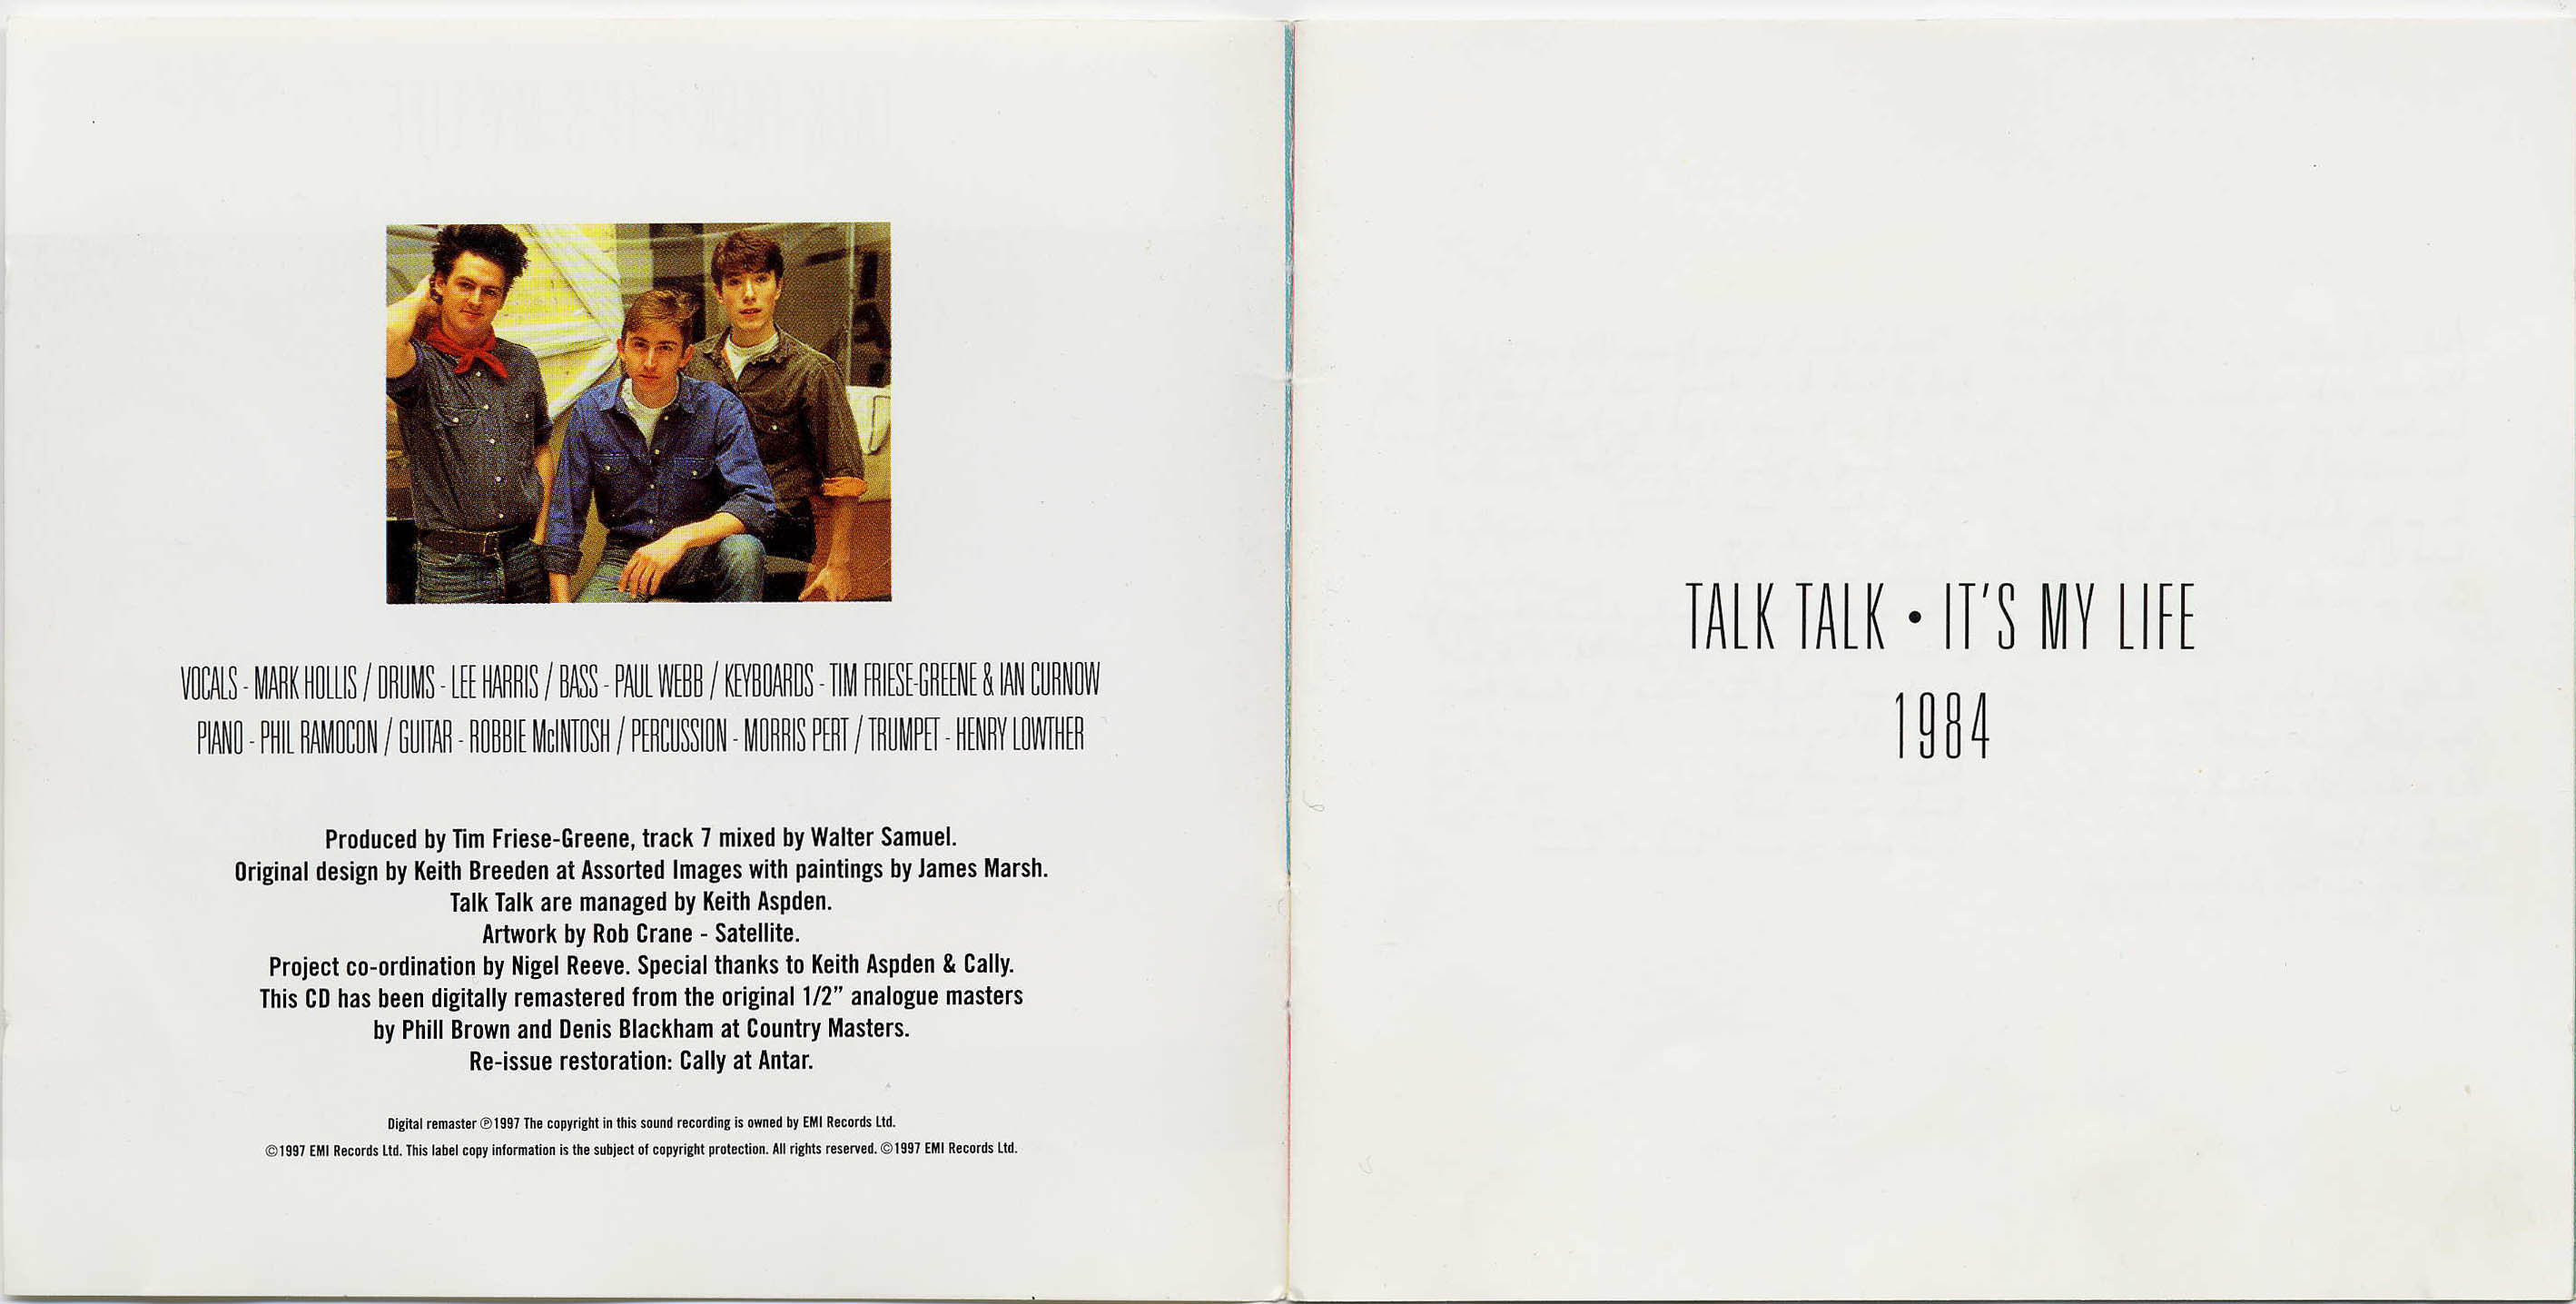 Talk перевод на русский песня. Talk talk it's my Life 1984. 1984 - It's my Life. Talk talk it s my Life альбом. Talk talk it's my Life 1984 обложка альбома.